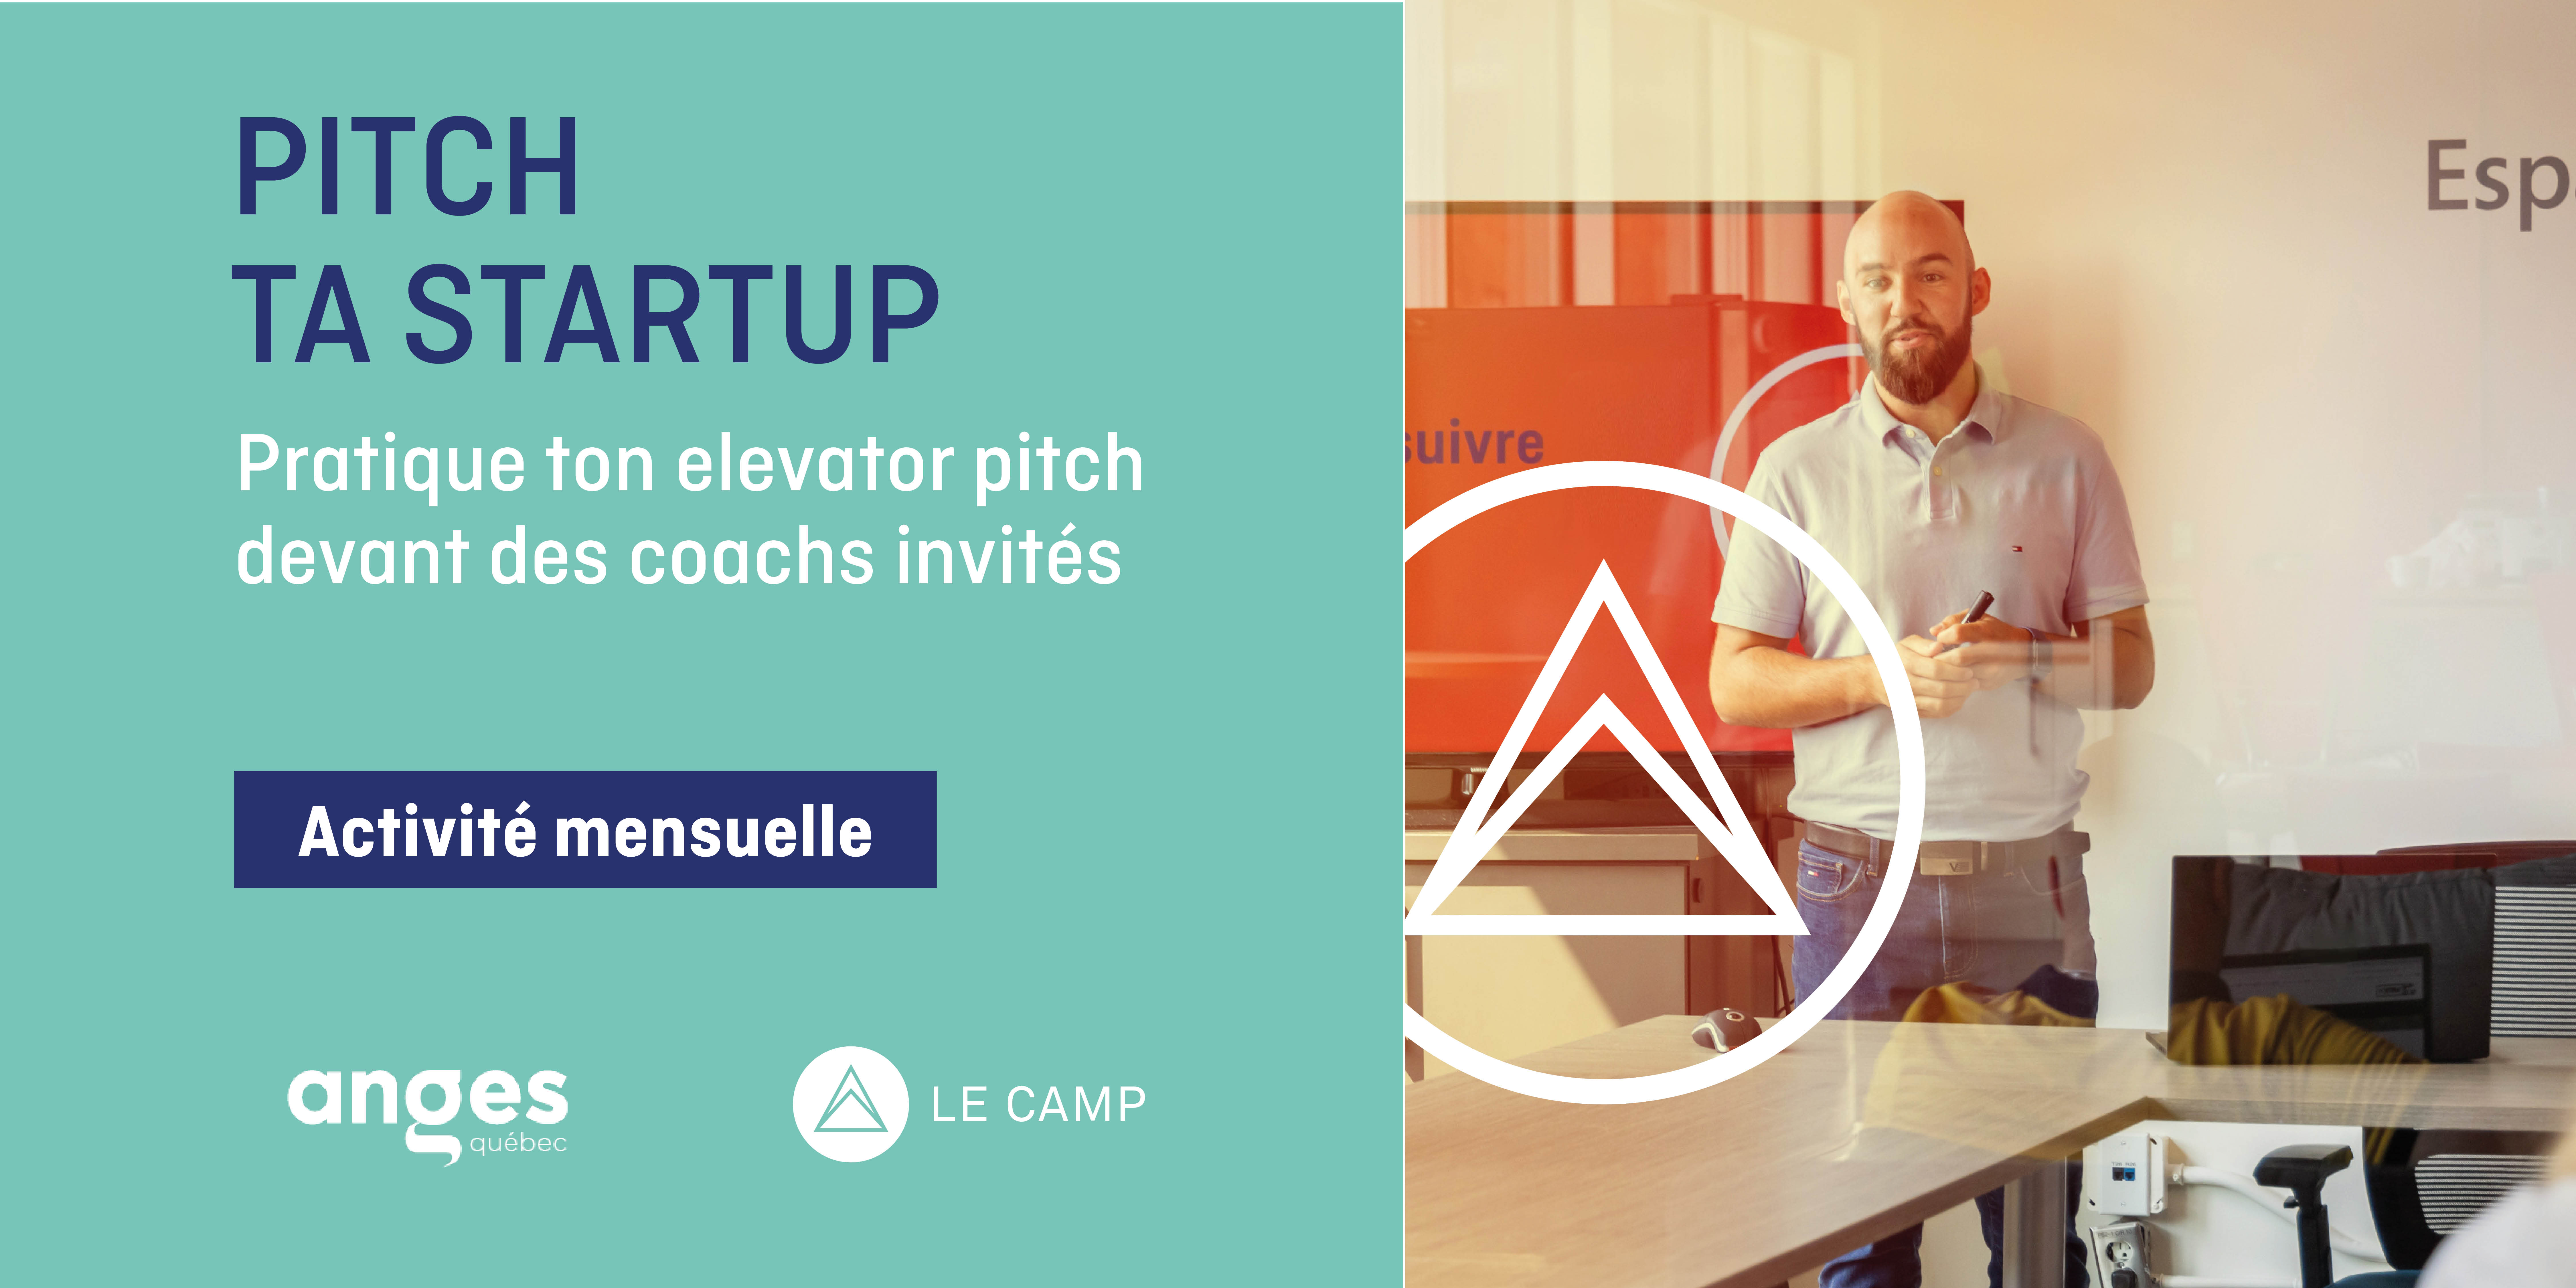 Pitch ta startup - Pratique ton elevator pitch | Édition de mars